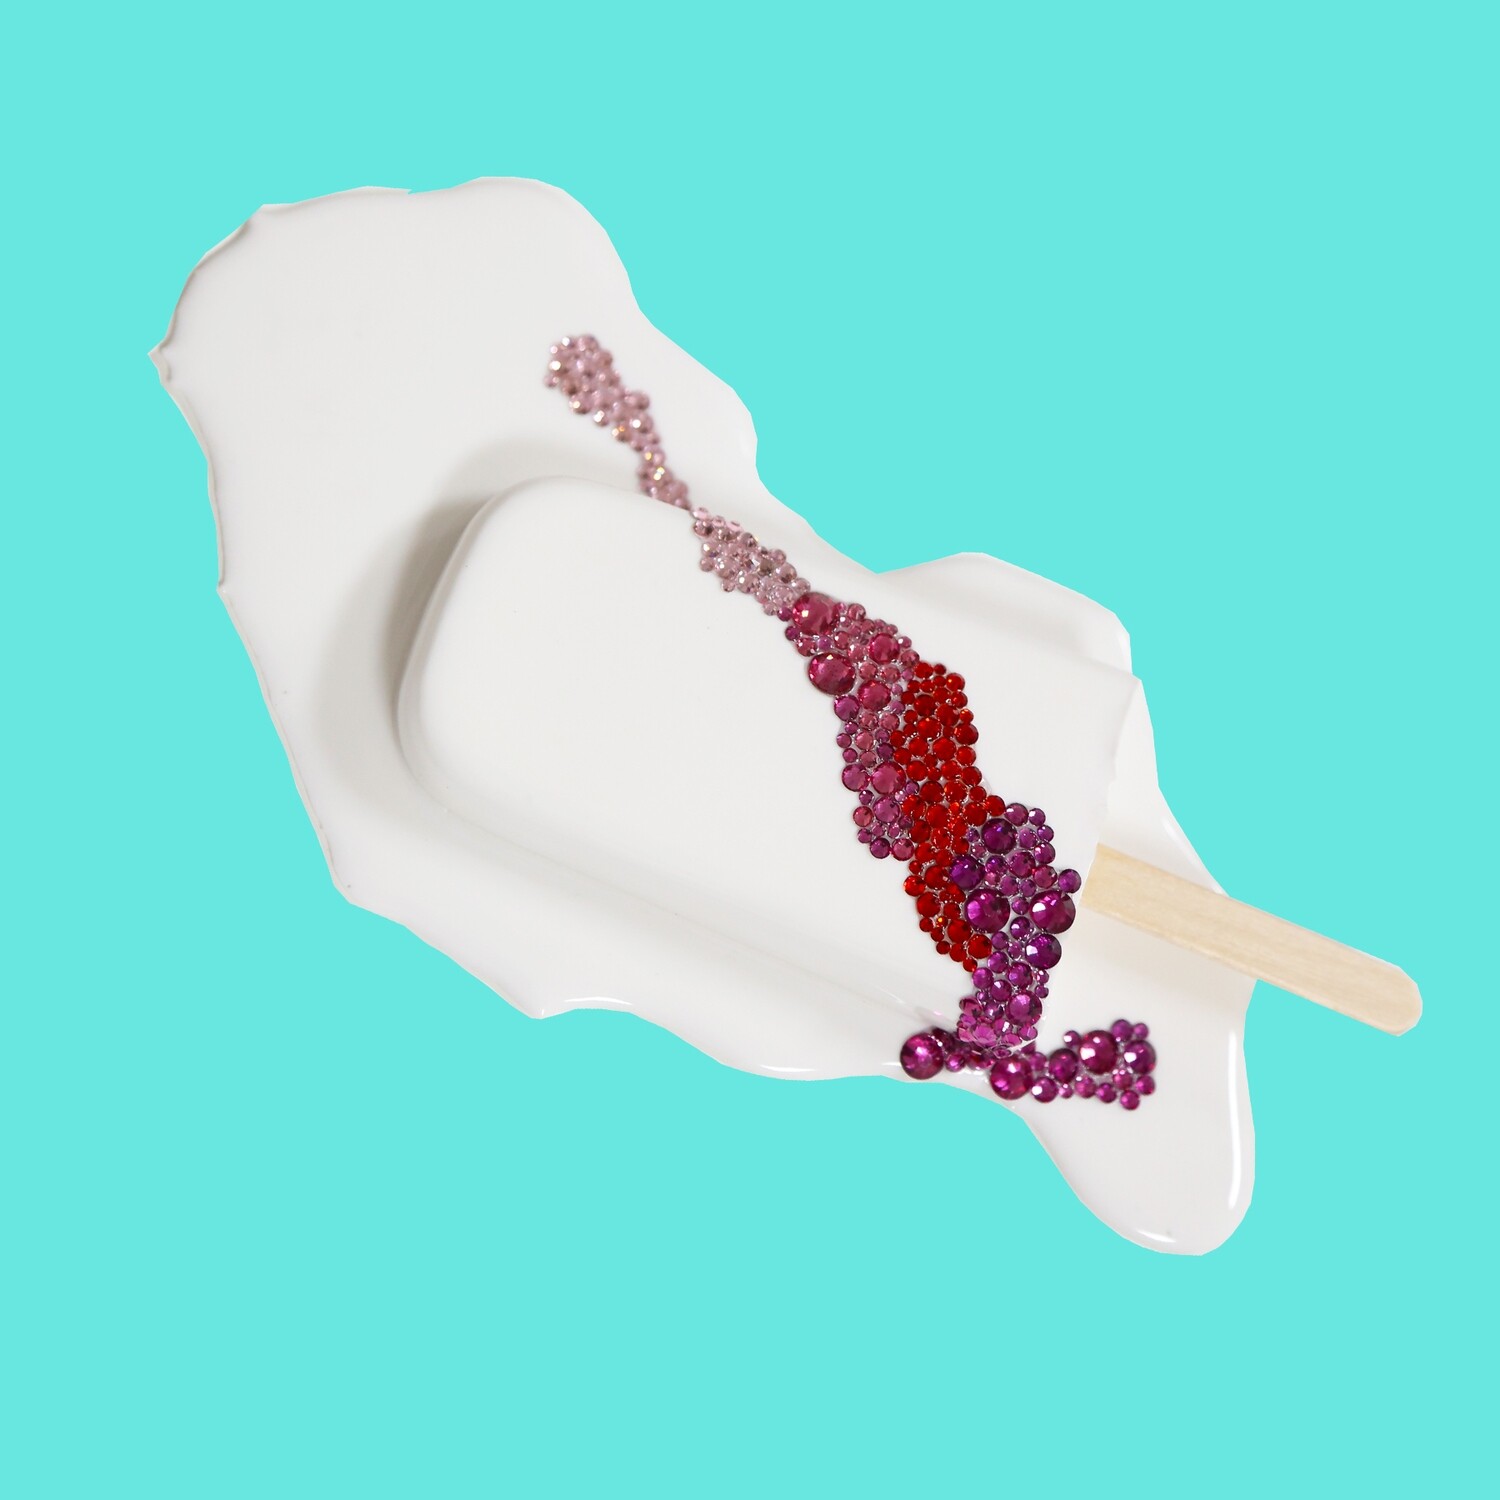 Melting Popsicle Art - Love or Lust Splat - Original Melting Pops